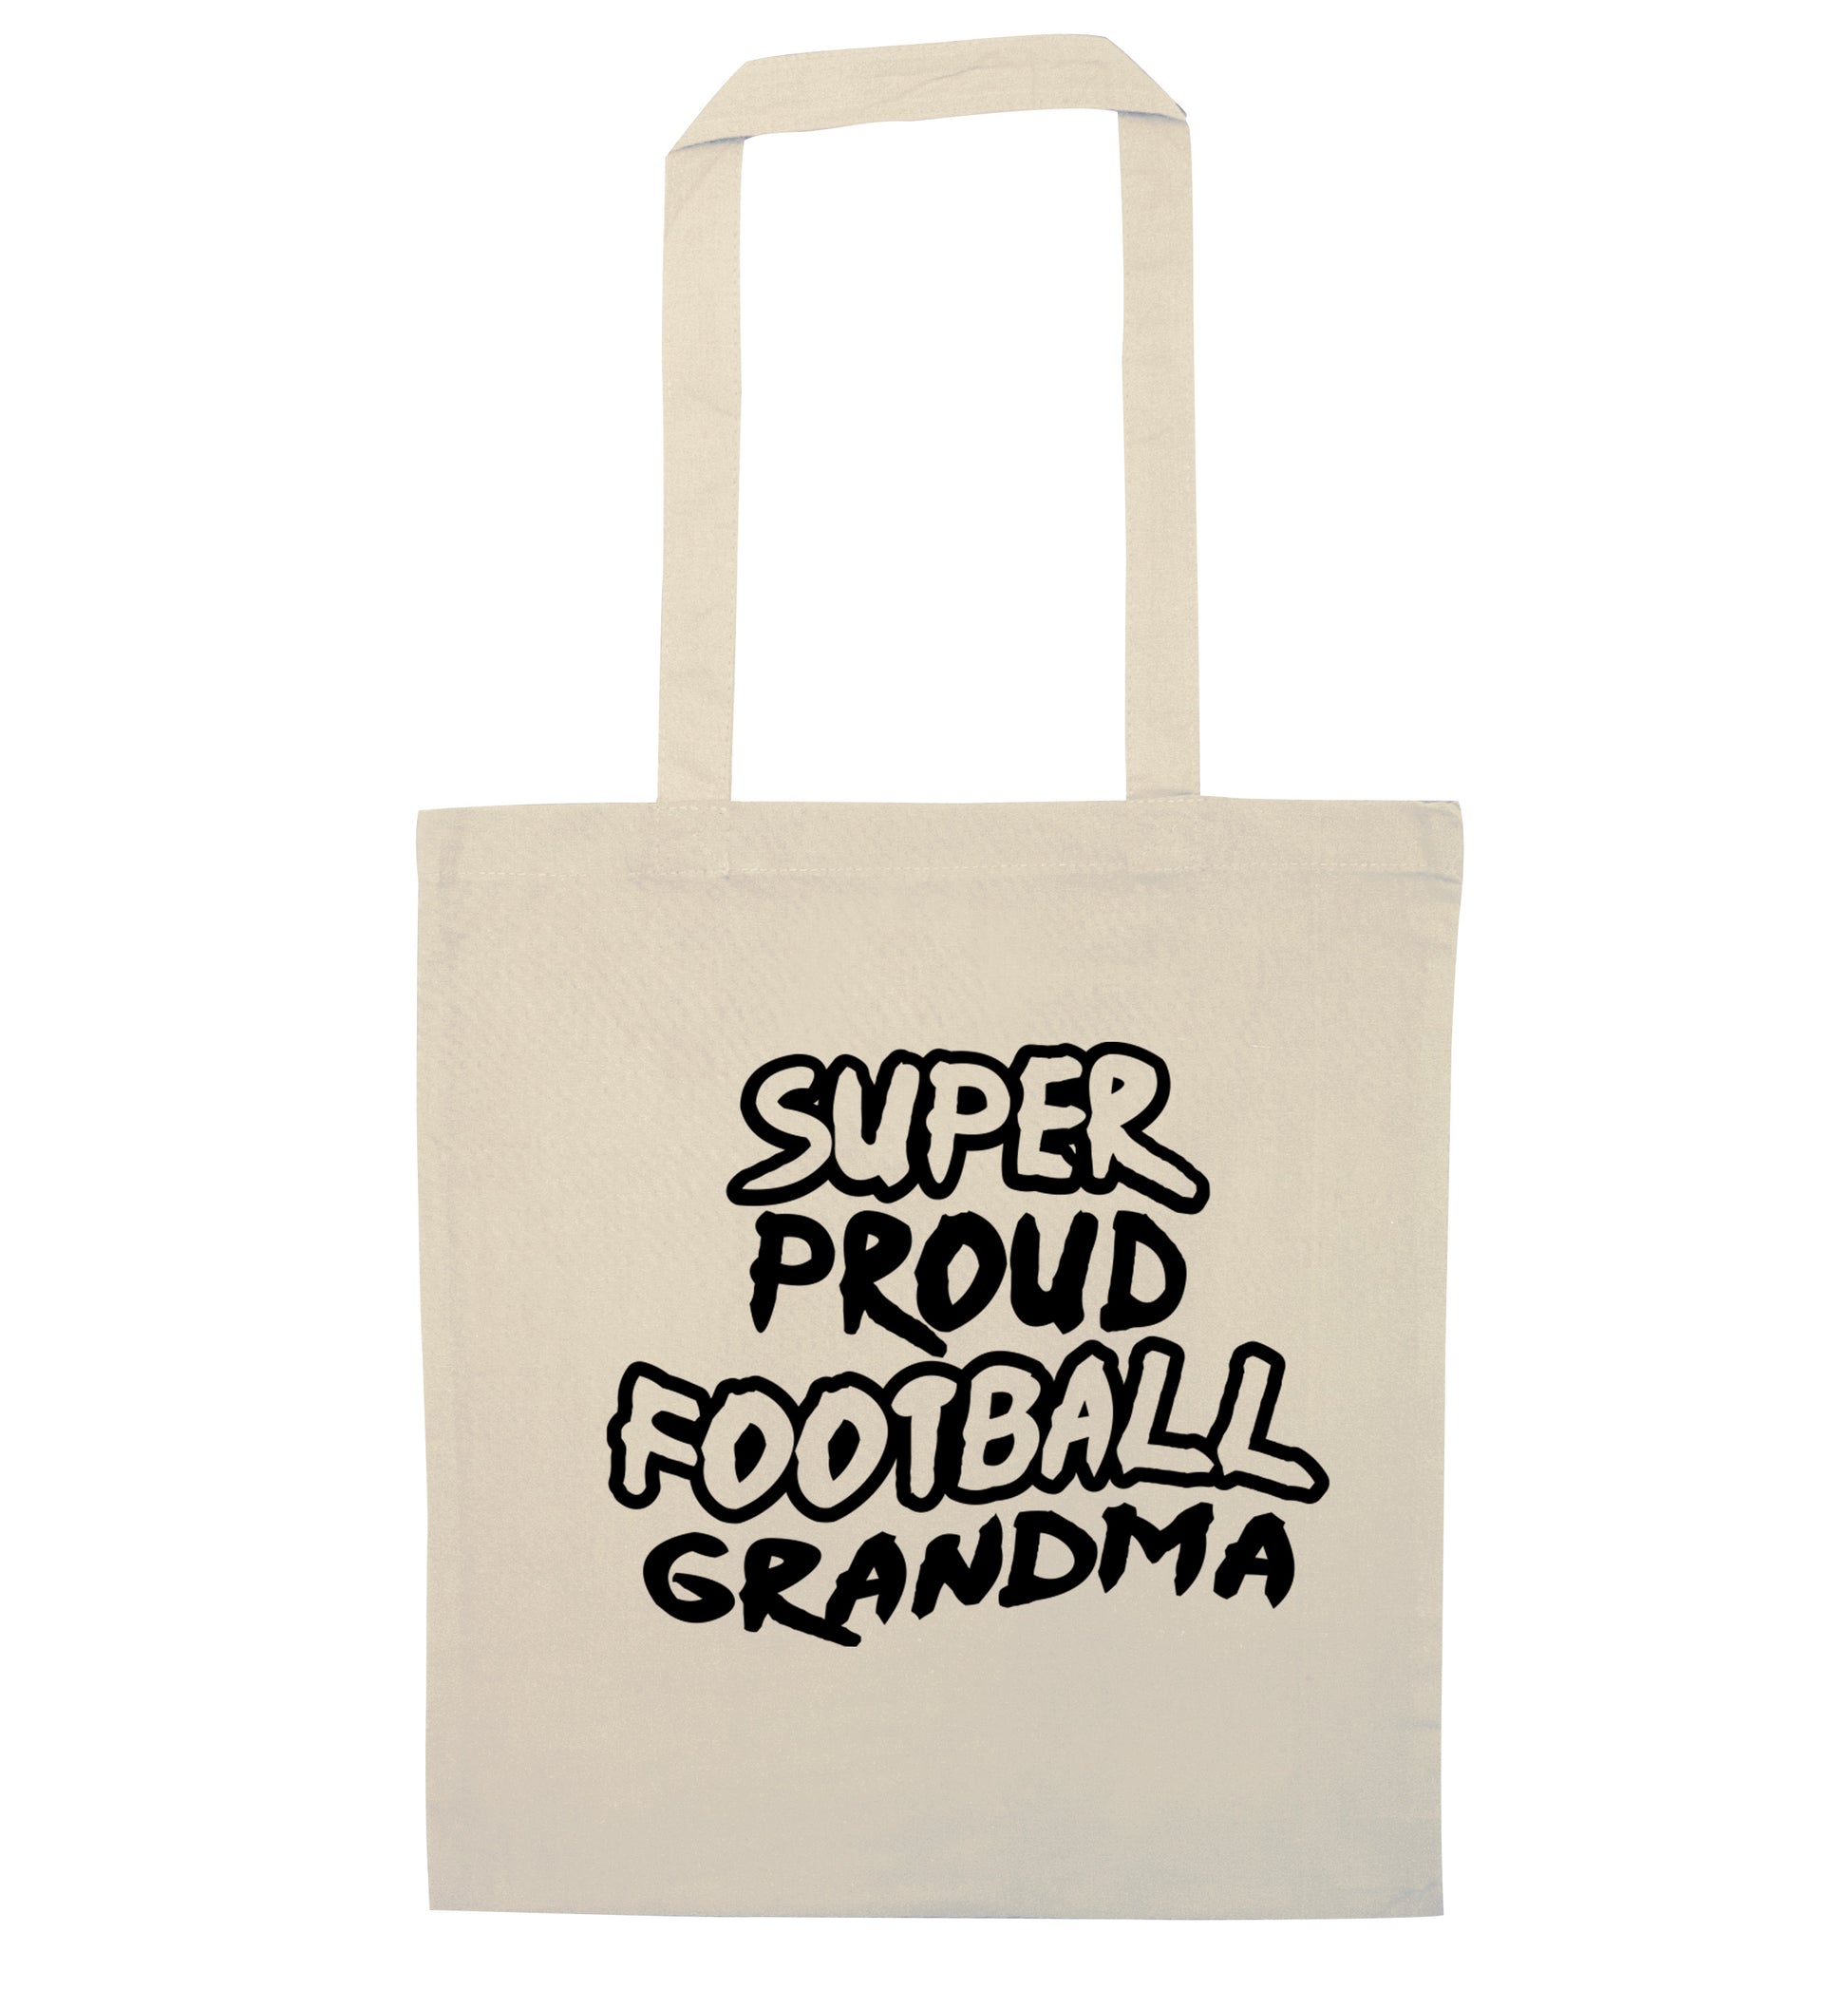 Super proud football grandma natural tote bag